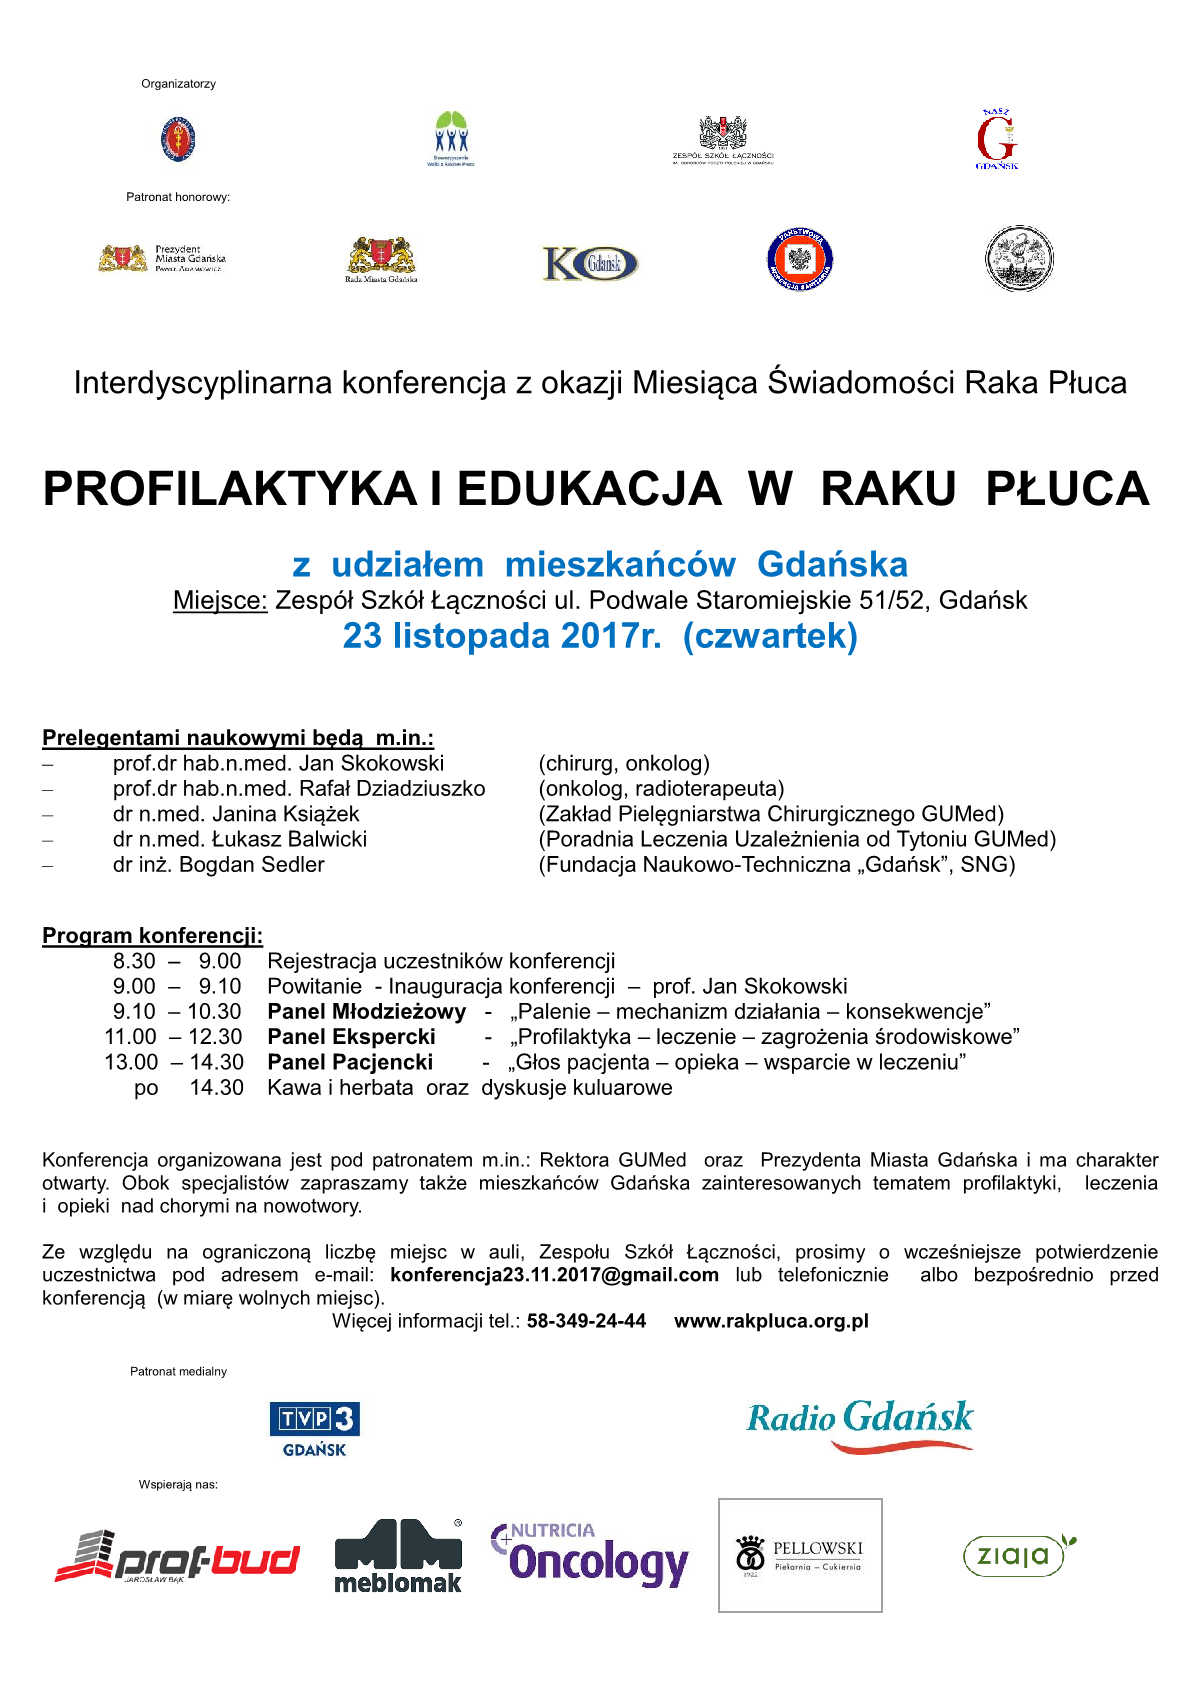 Interdyscyplinarna Konferencja Profilaktyka i Edukacja w Raku Płuca1